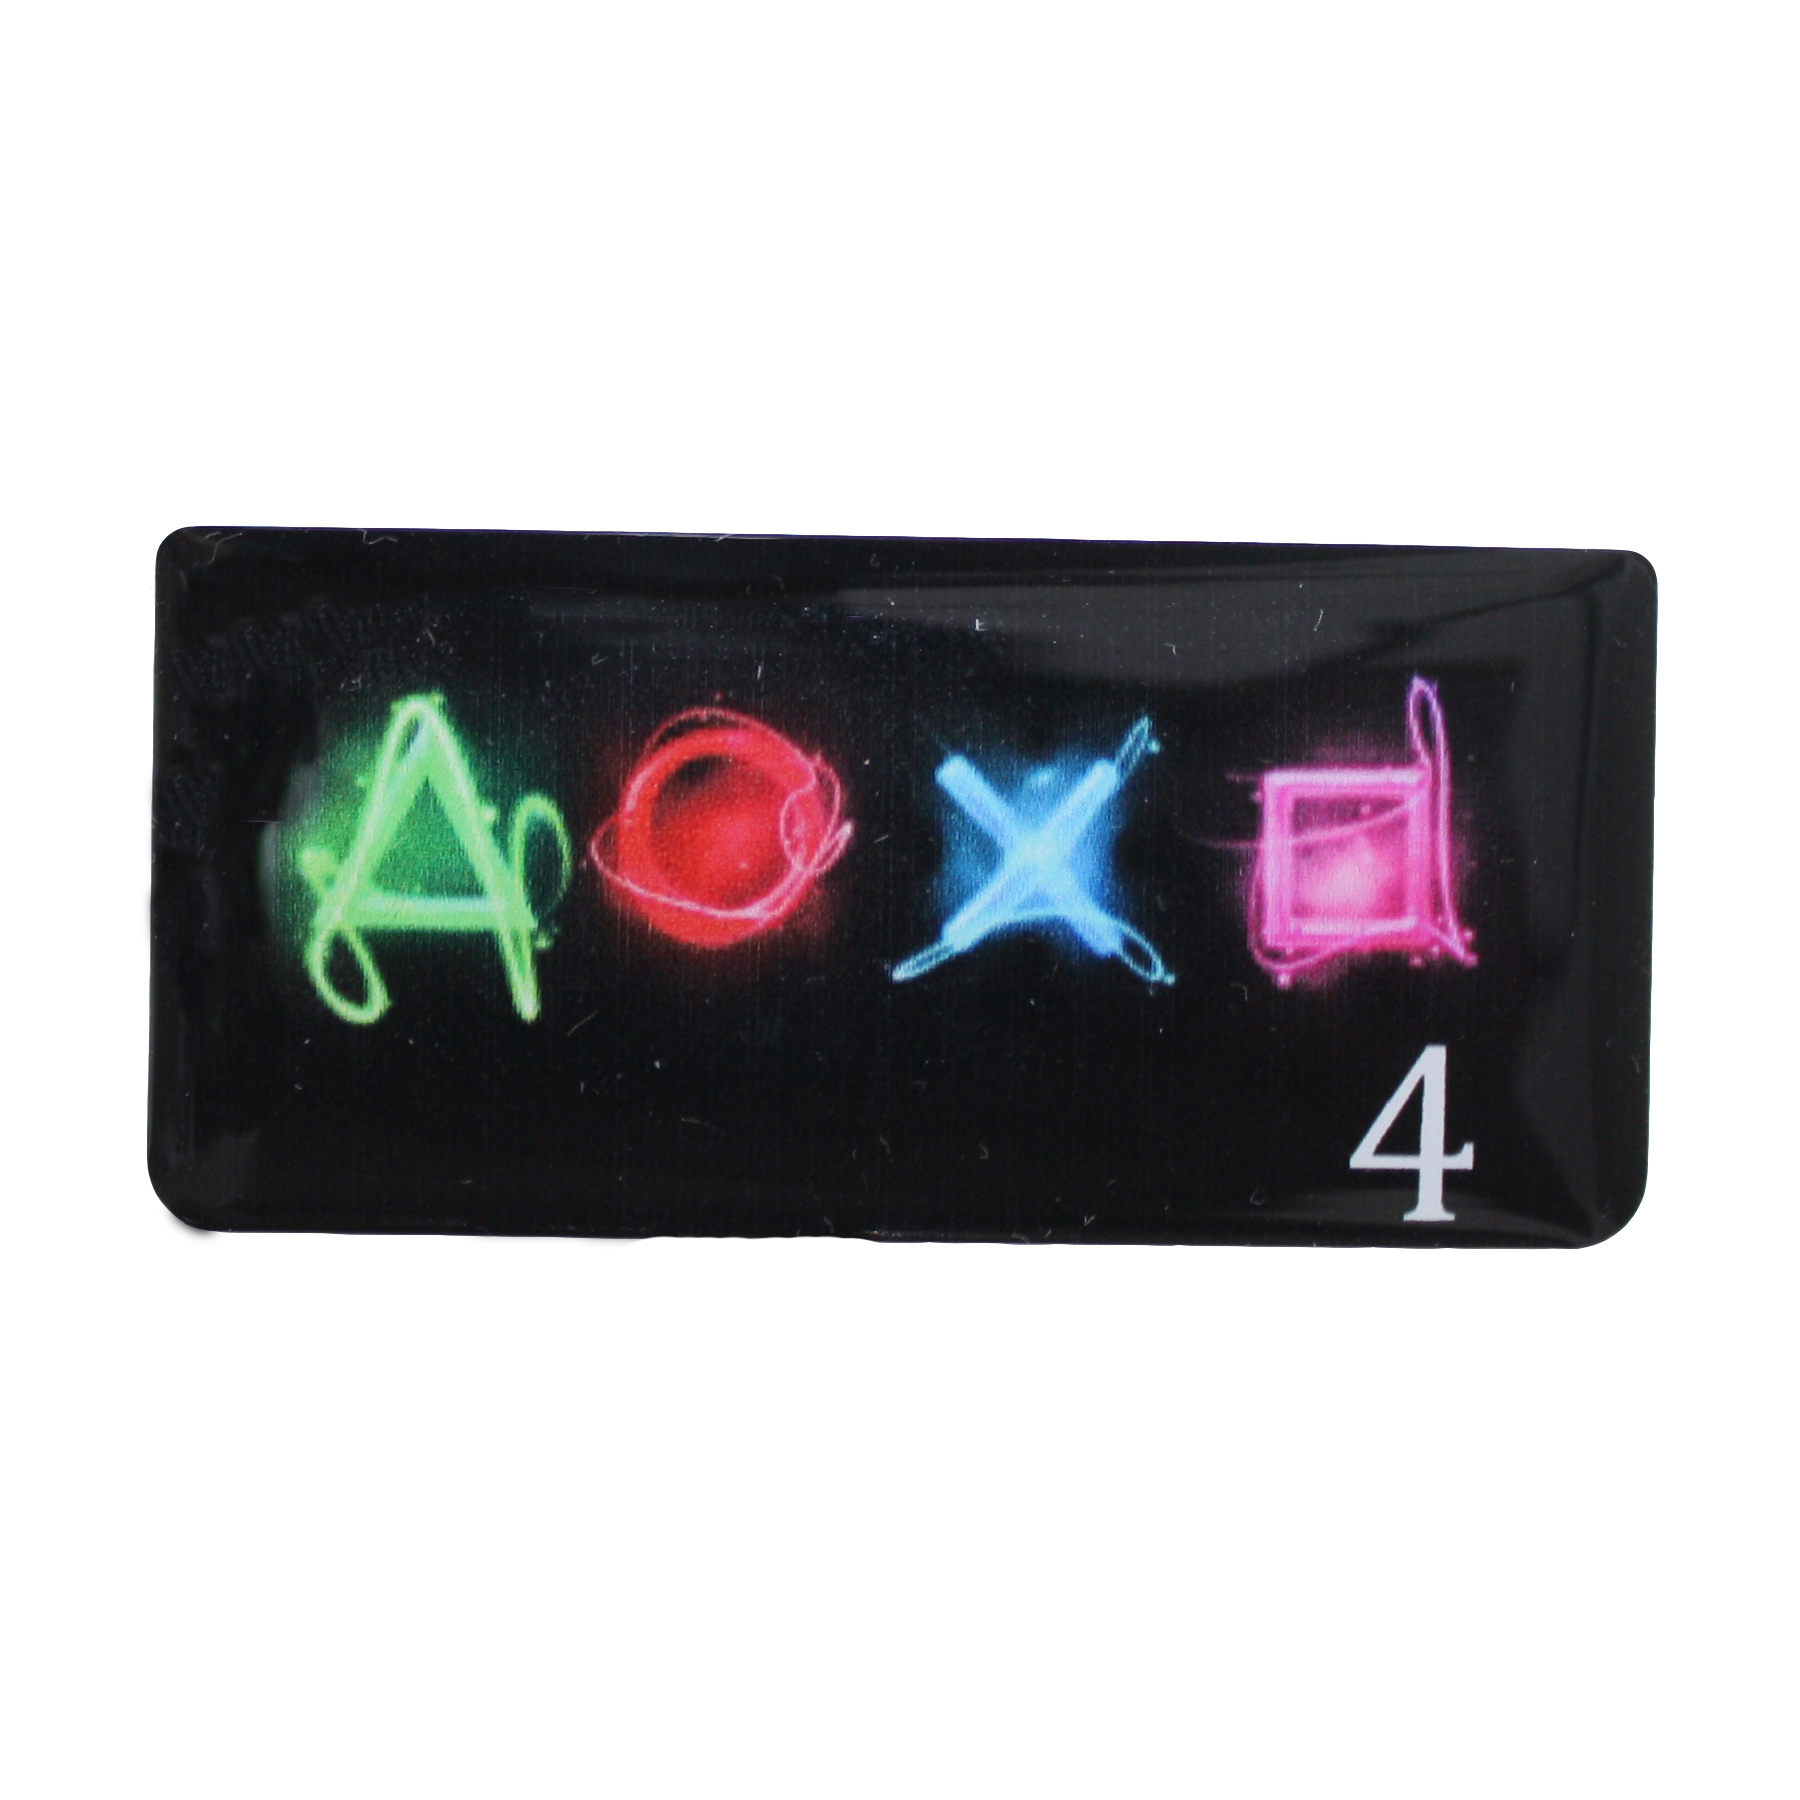 برچسب تاچ پد دسته بازی PS4 مدل AOXO4